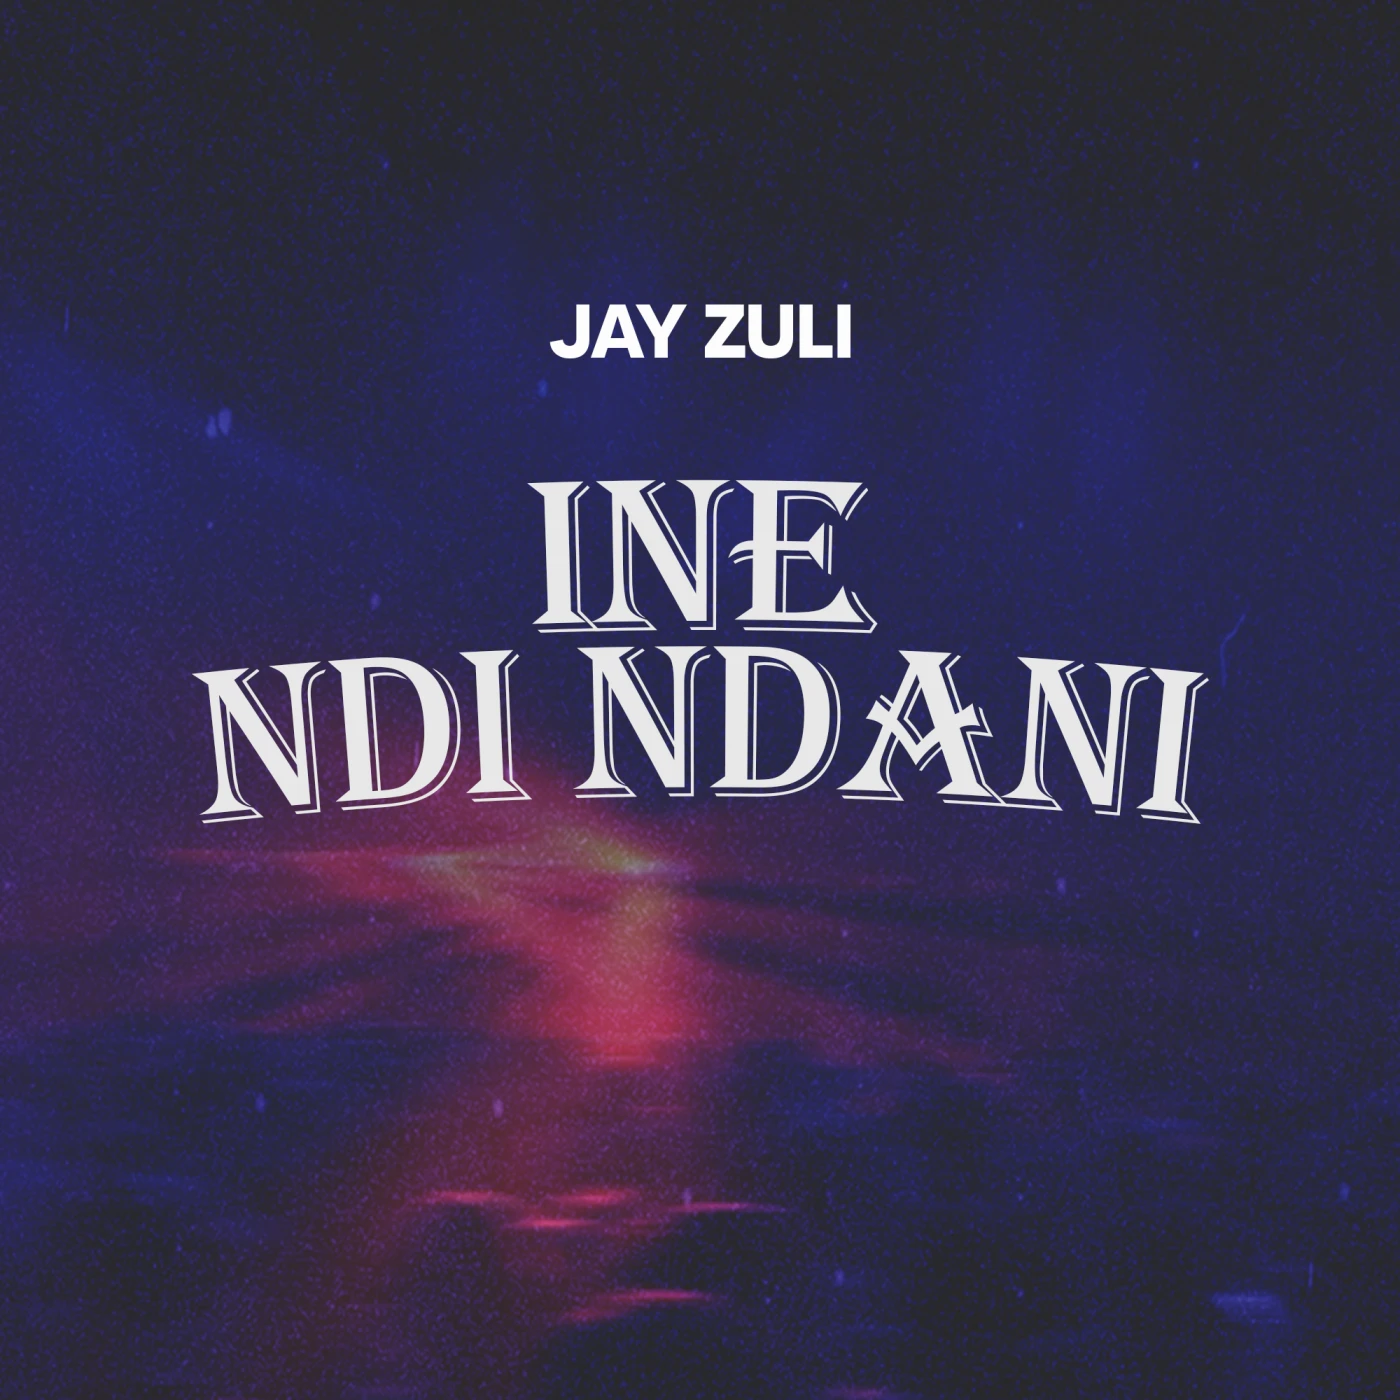 1-ine-ndi-ndani-jay-zuli-Just Malawi Music